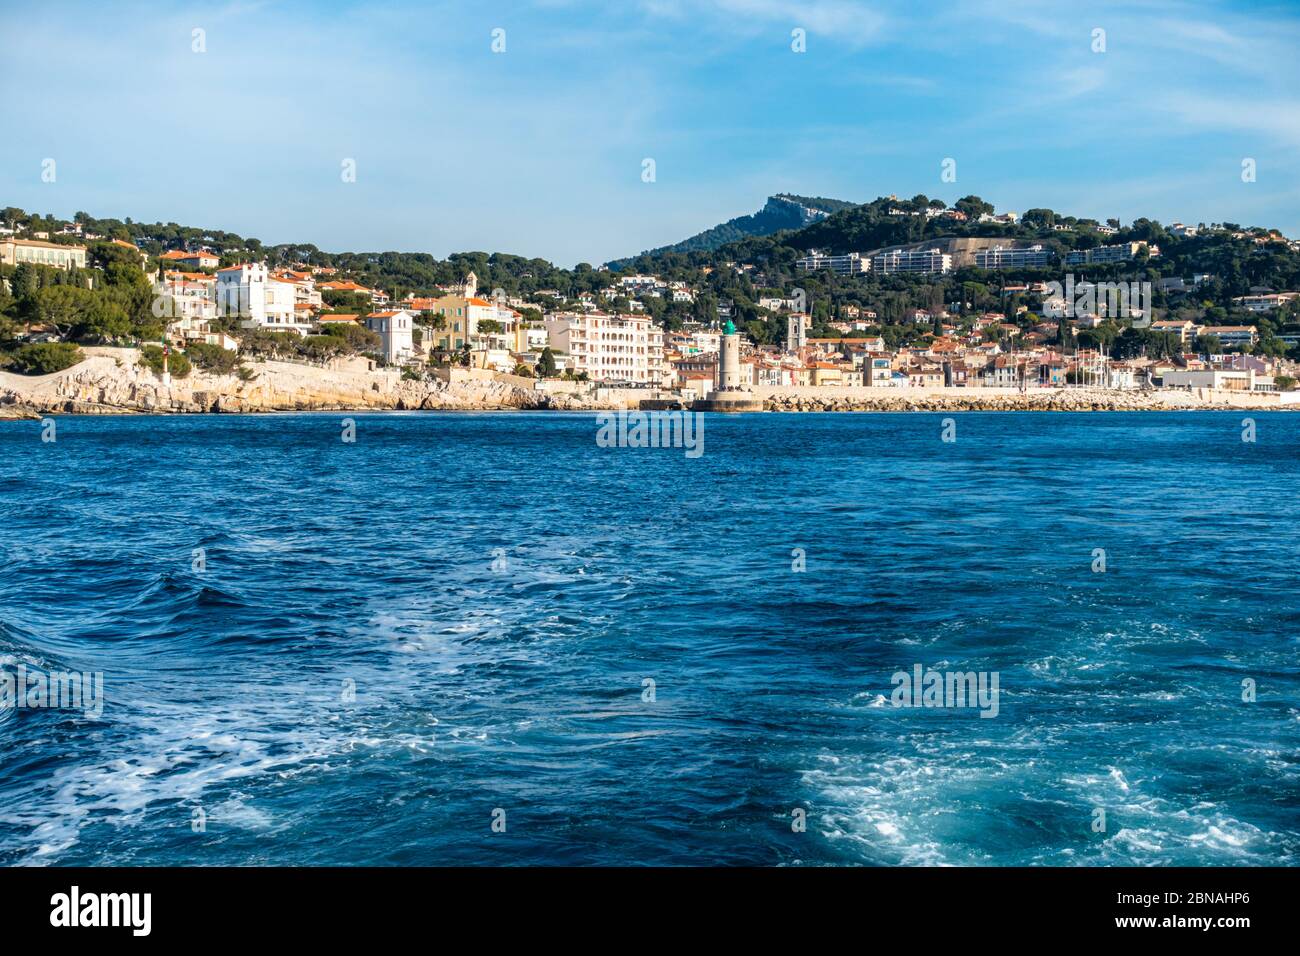 La ville de Cassis vue d'un bateau dans une belle journée ensoleillée, France Banque D'Images